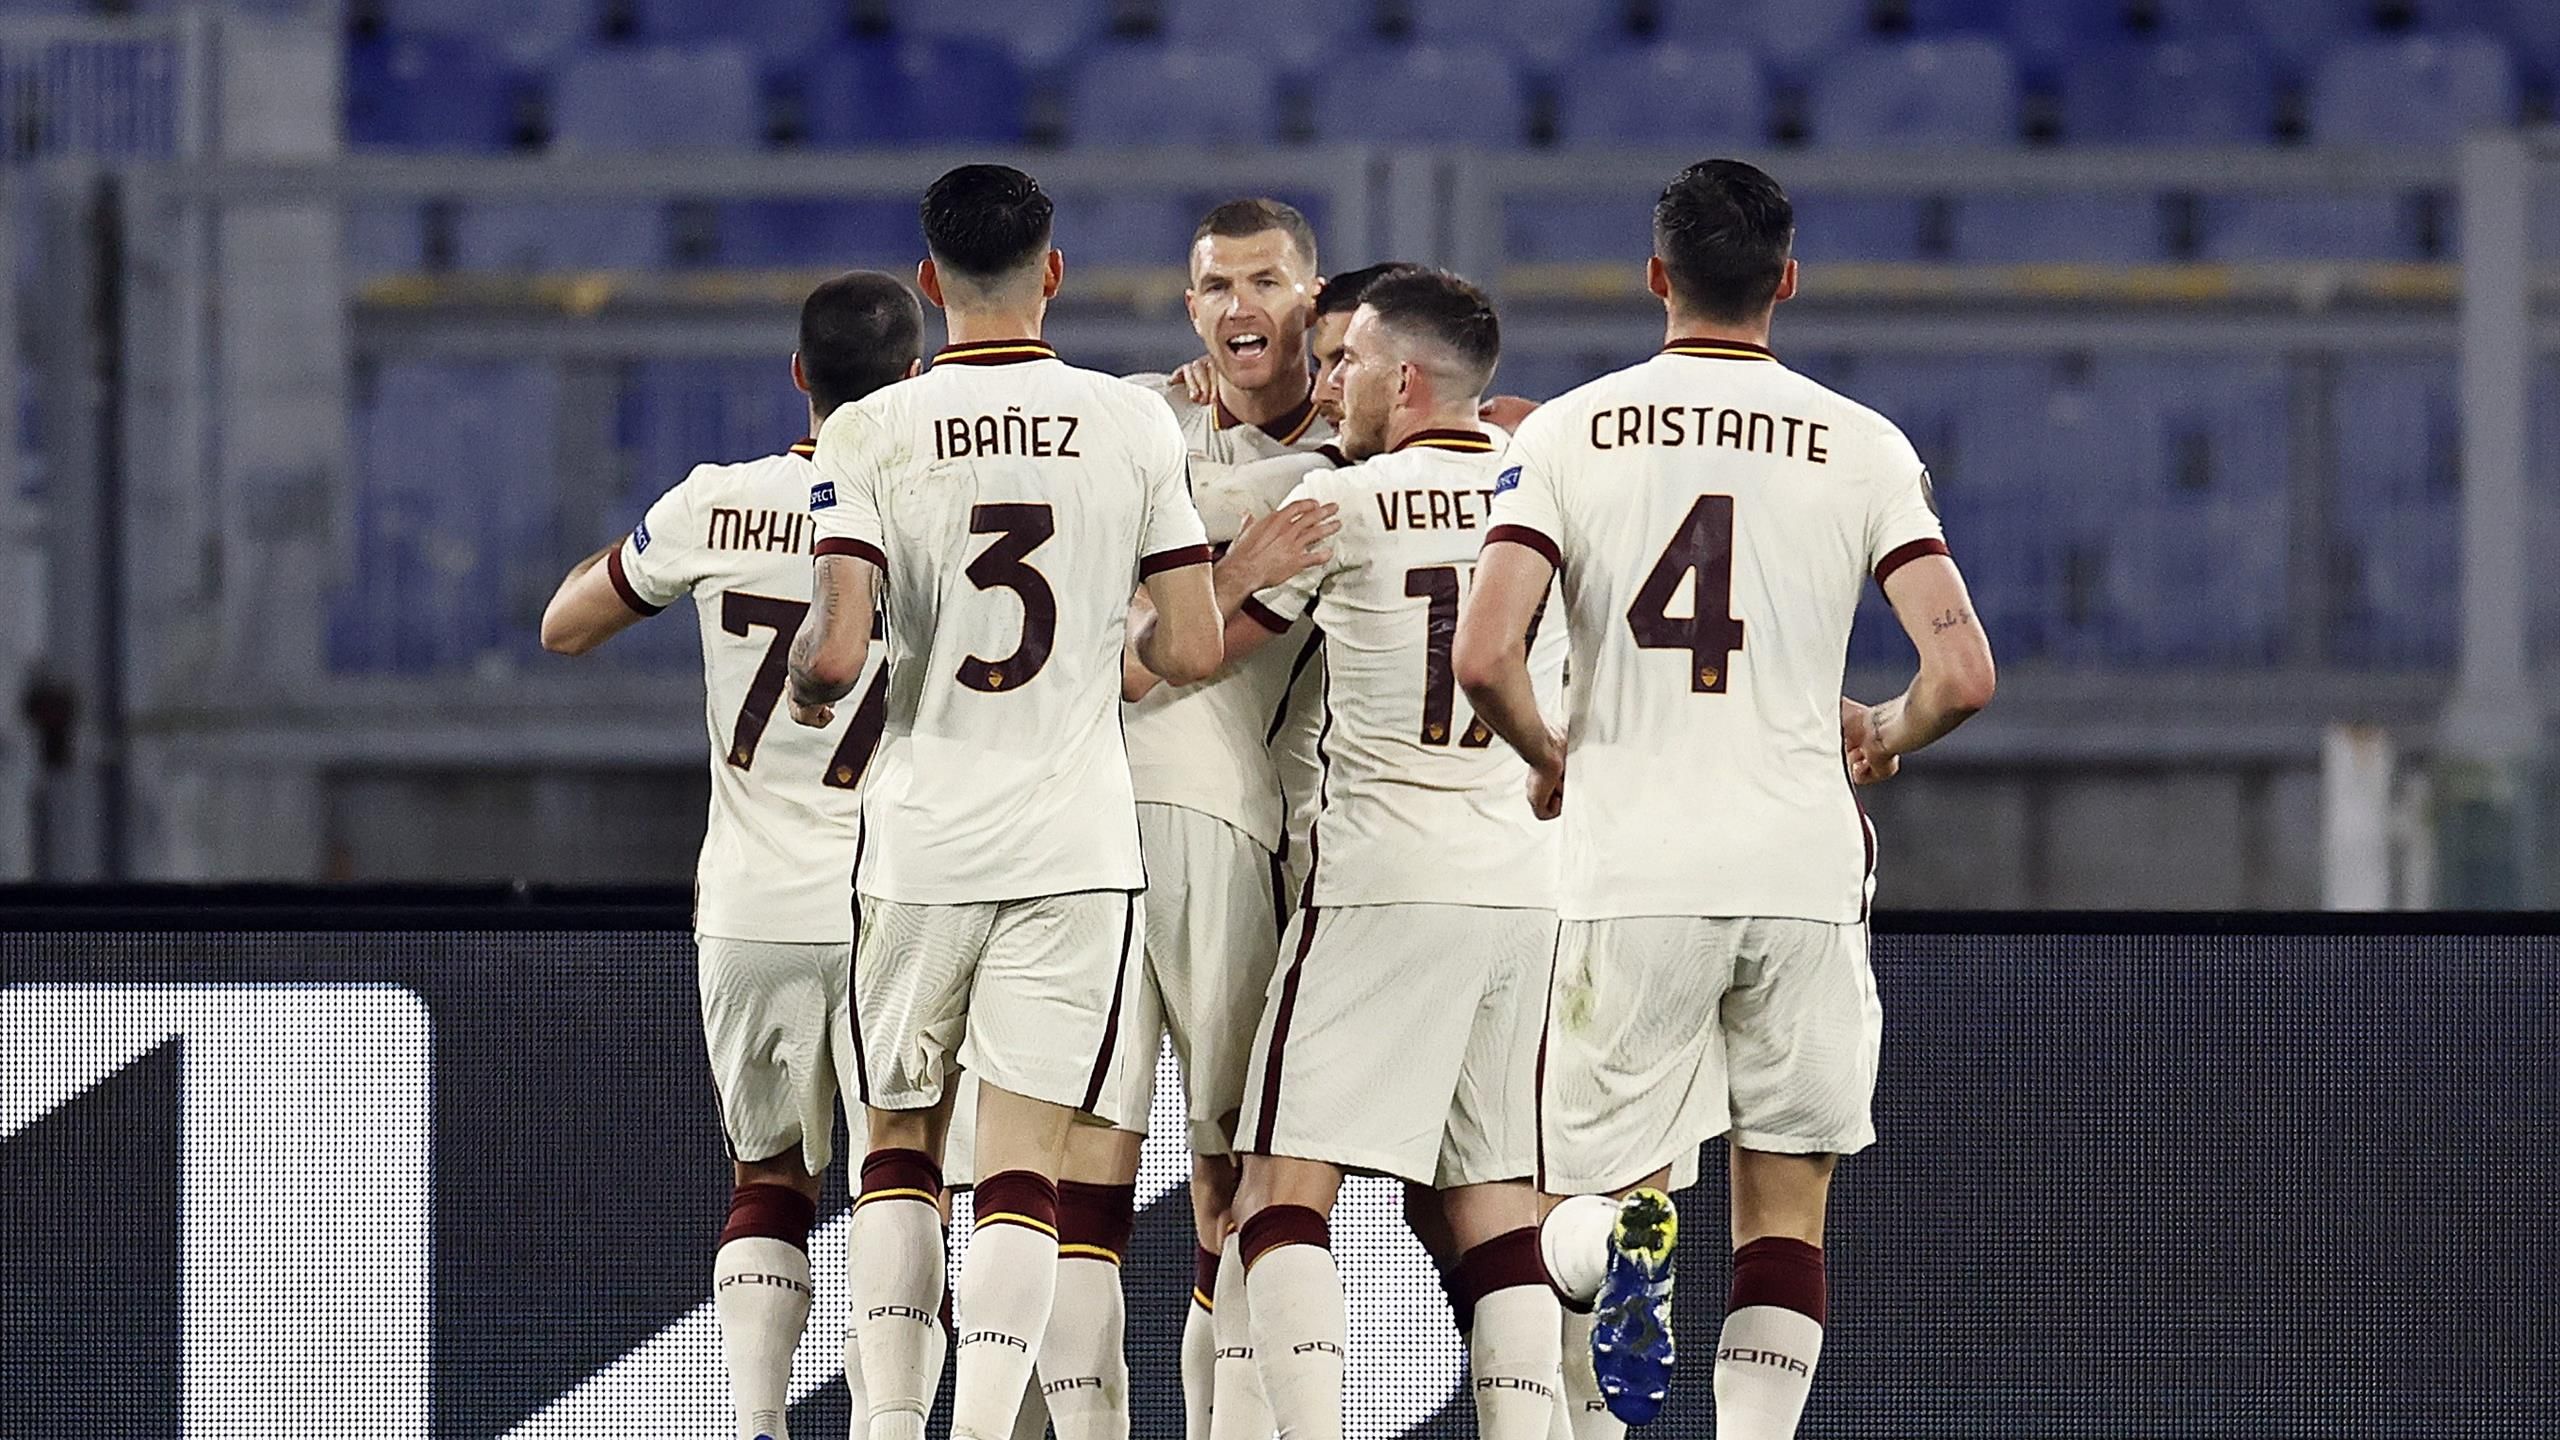 Roma 2-0 Slavia P.: results, summary and goals